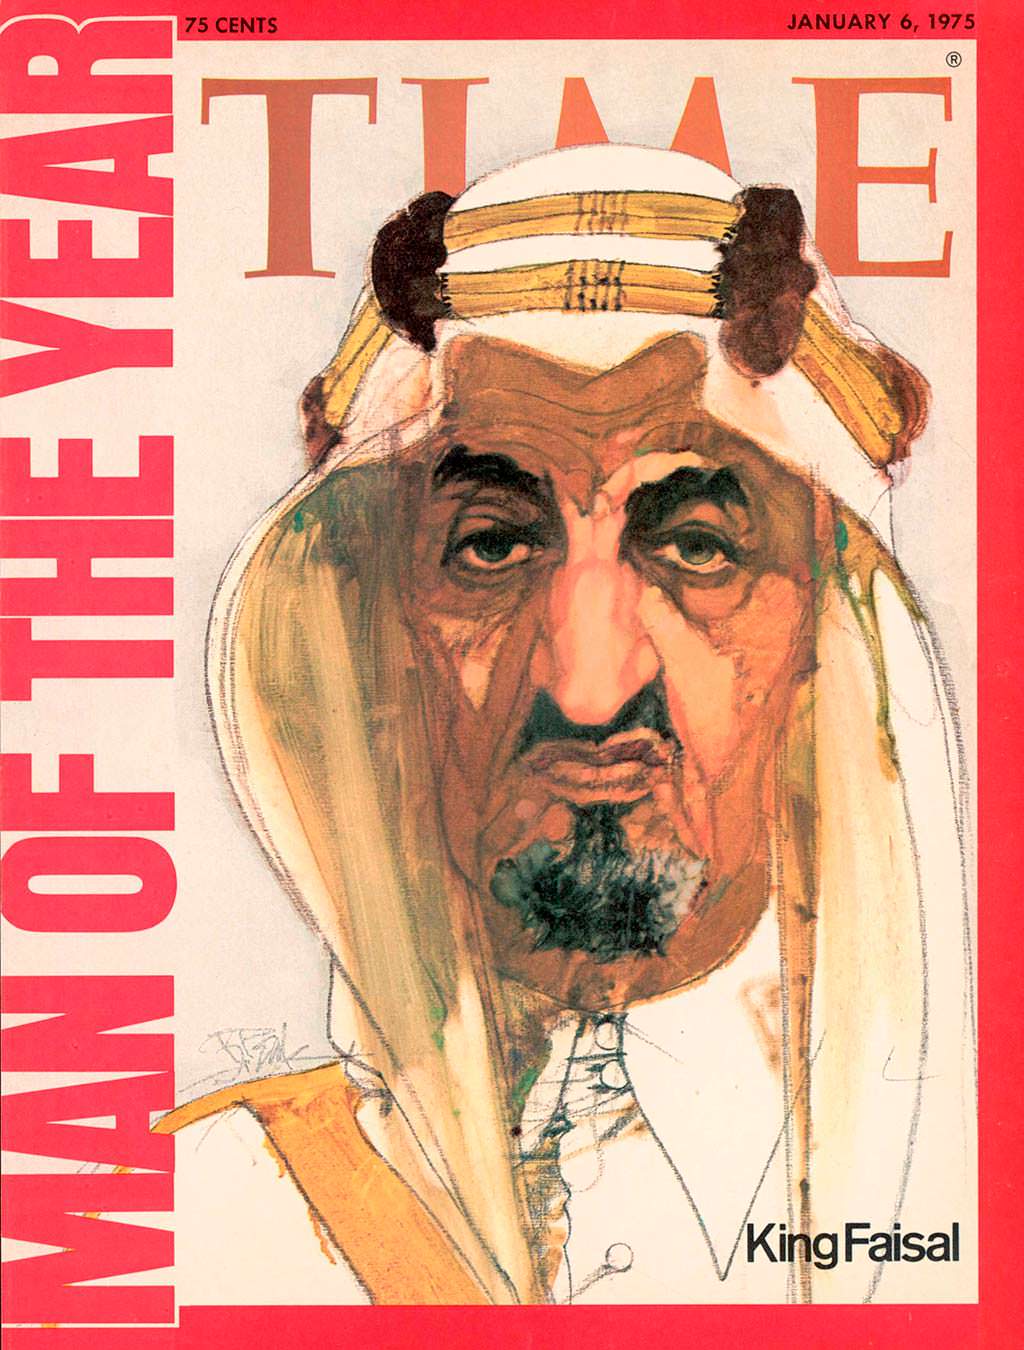 1974 год. Король Фейсал ас-Сауд на обложке Time